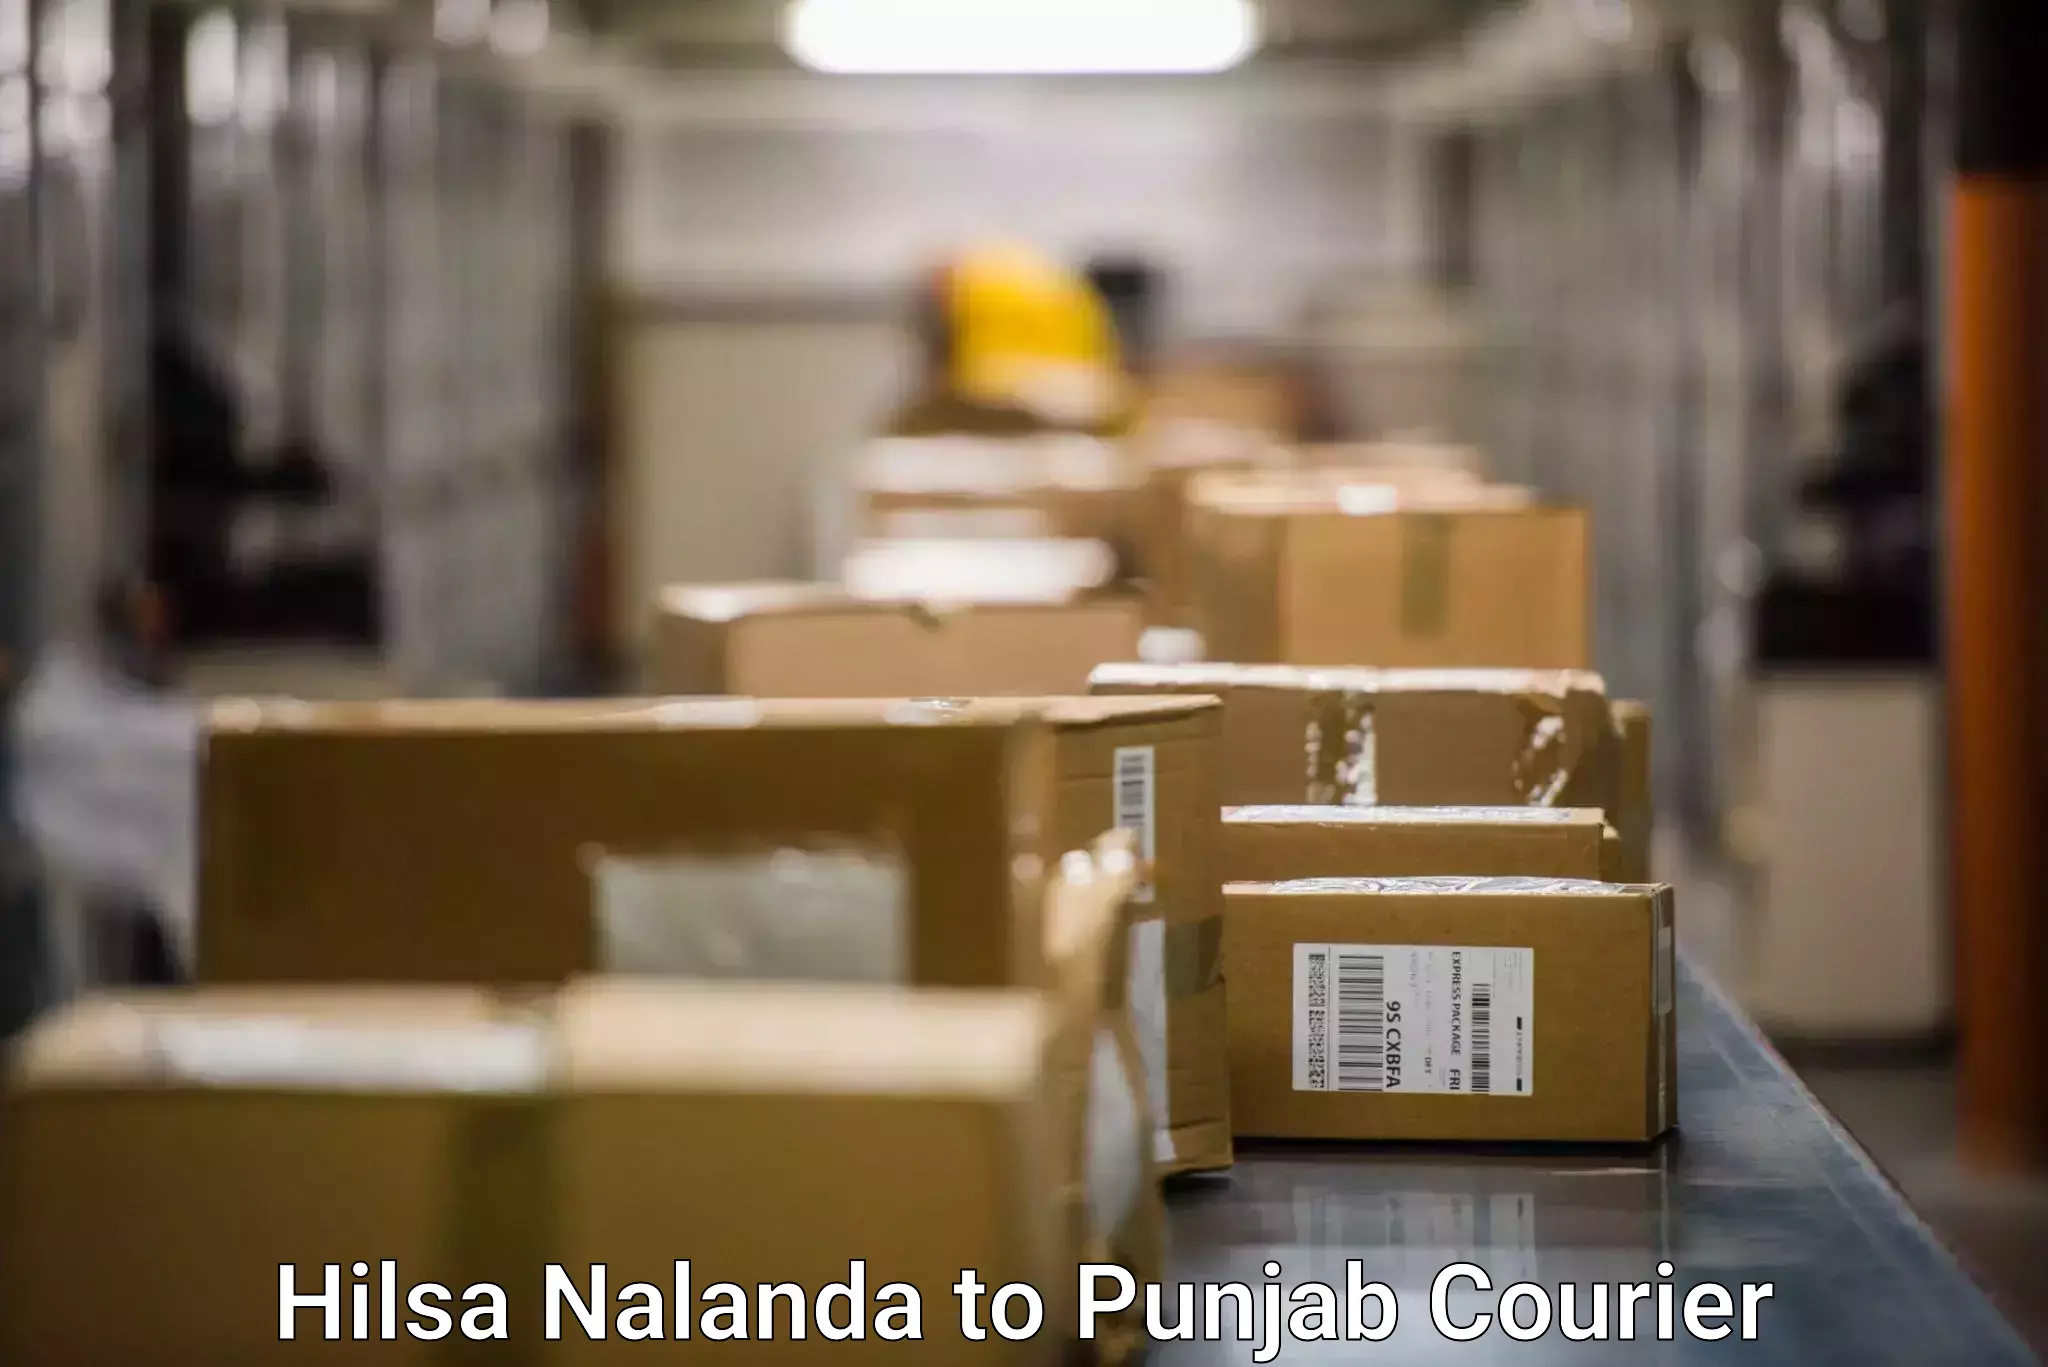 Global delivery options Hilsa Nalanda to Ajnala